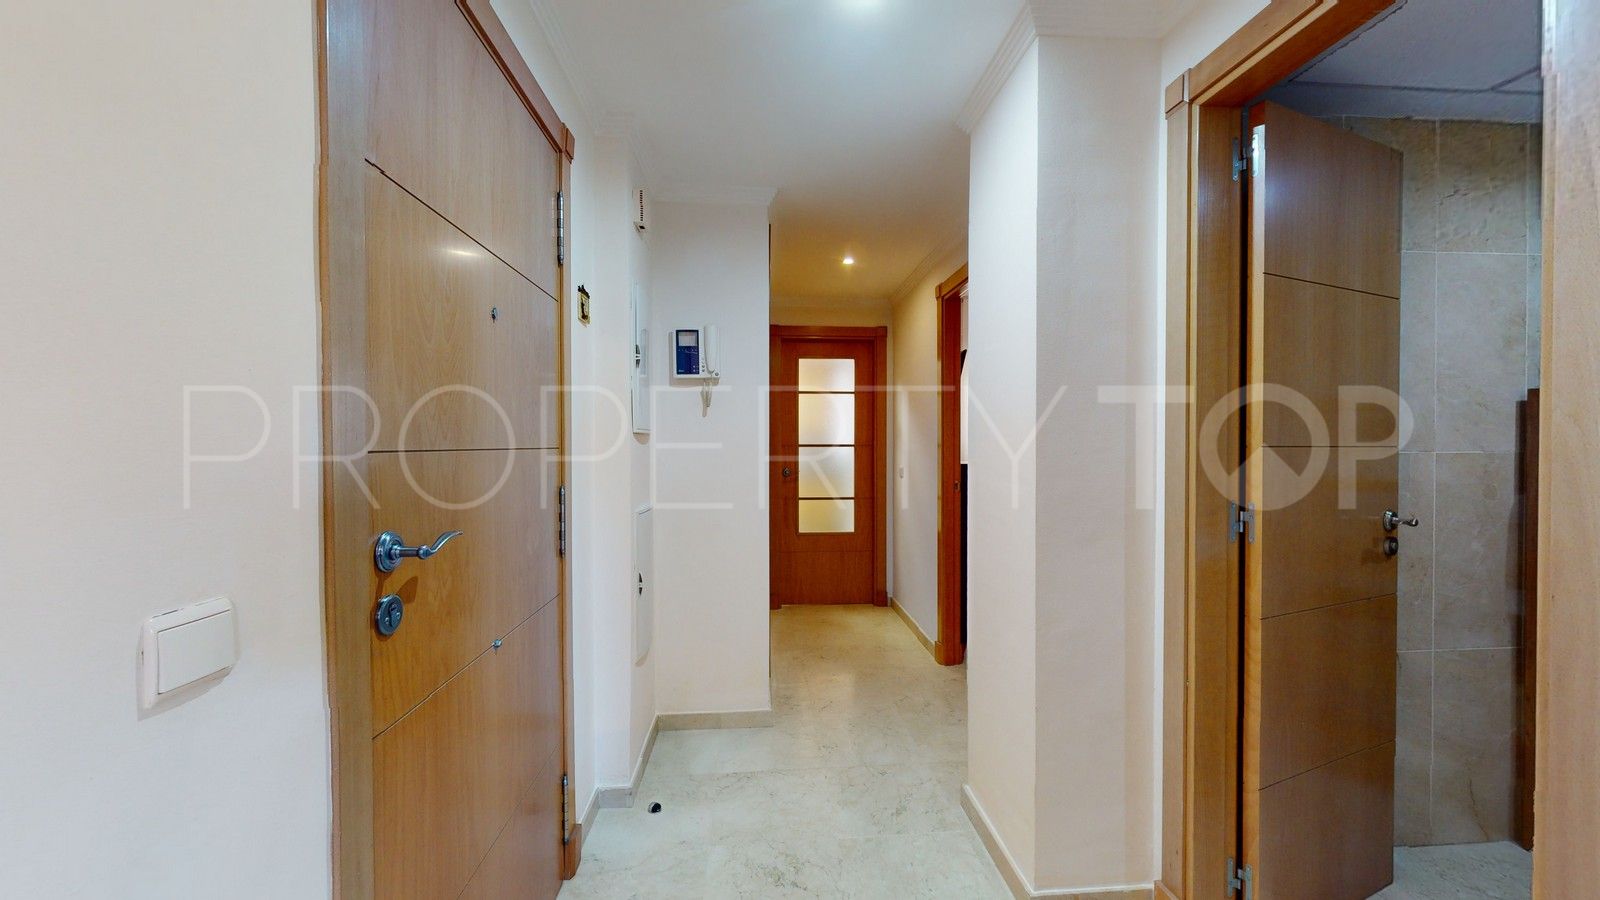 Se vende apartamento planta baja con 1 dormitorio en Arroyo de la Miel